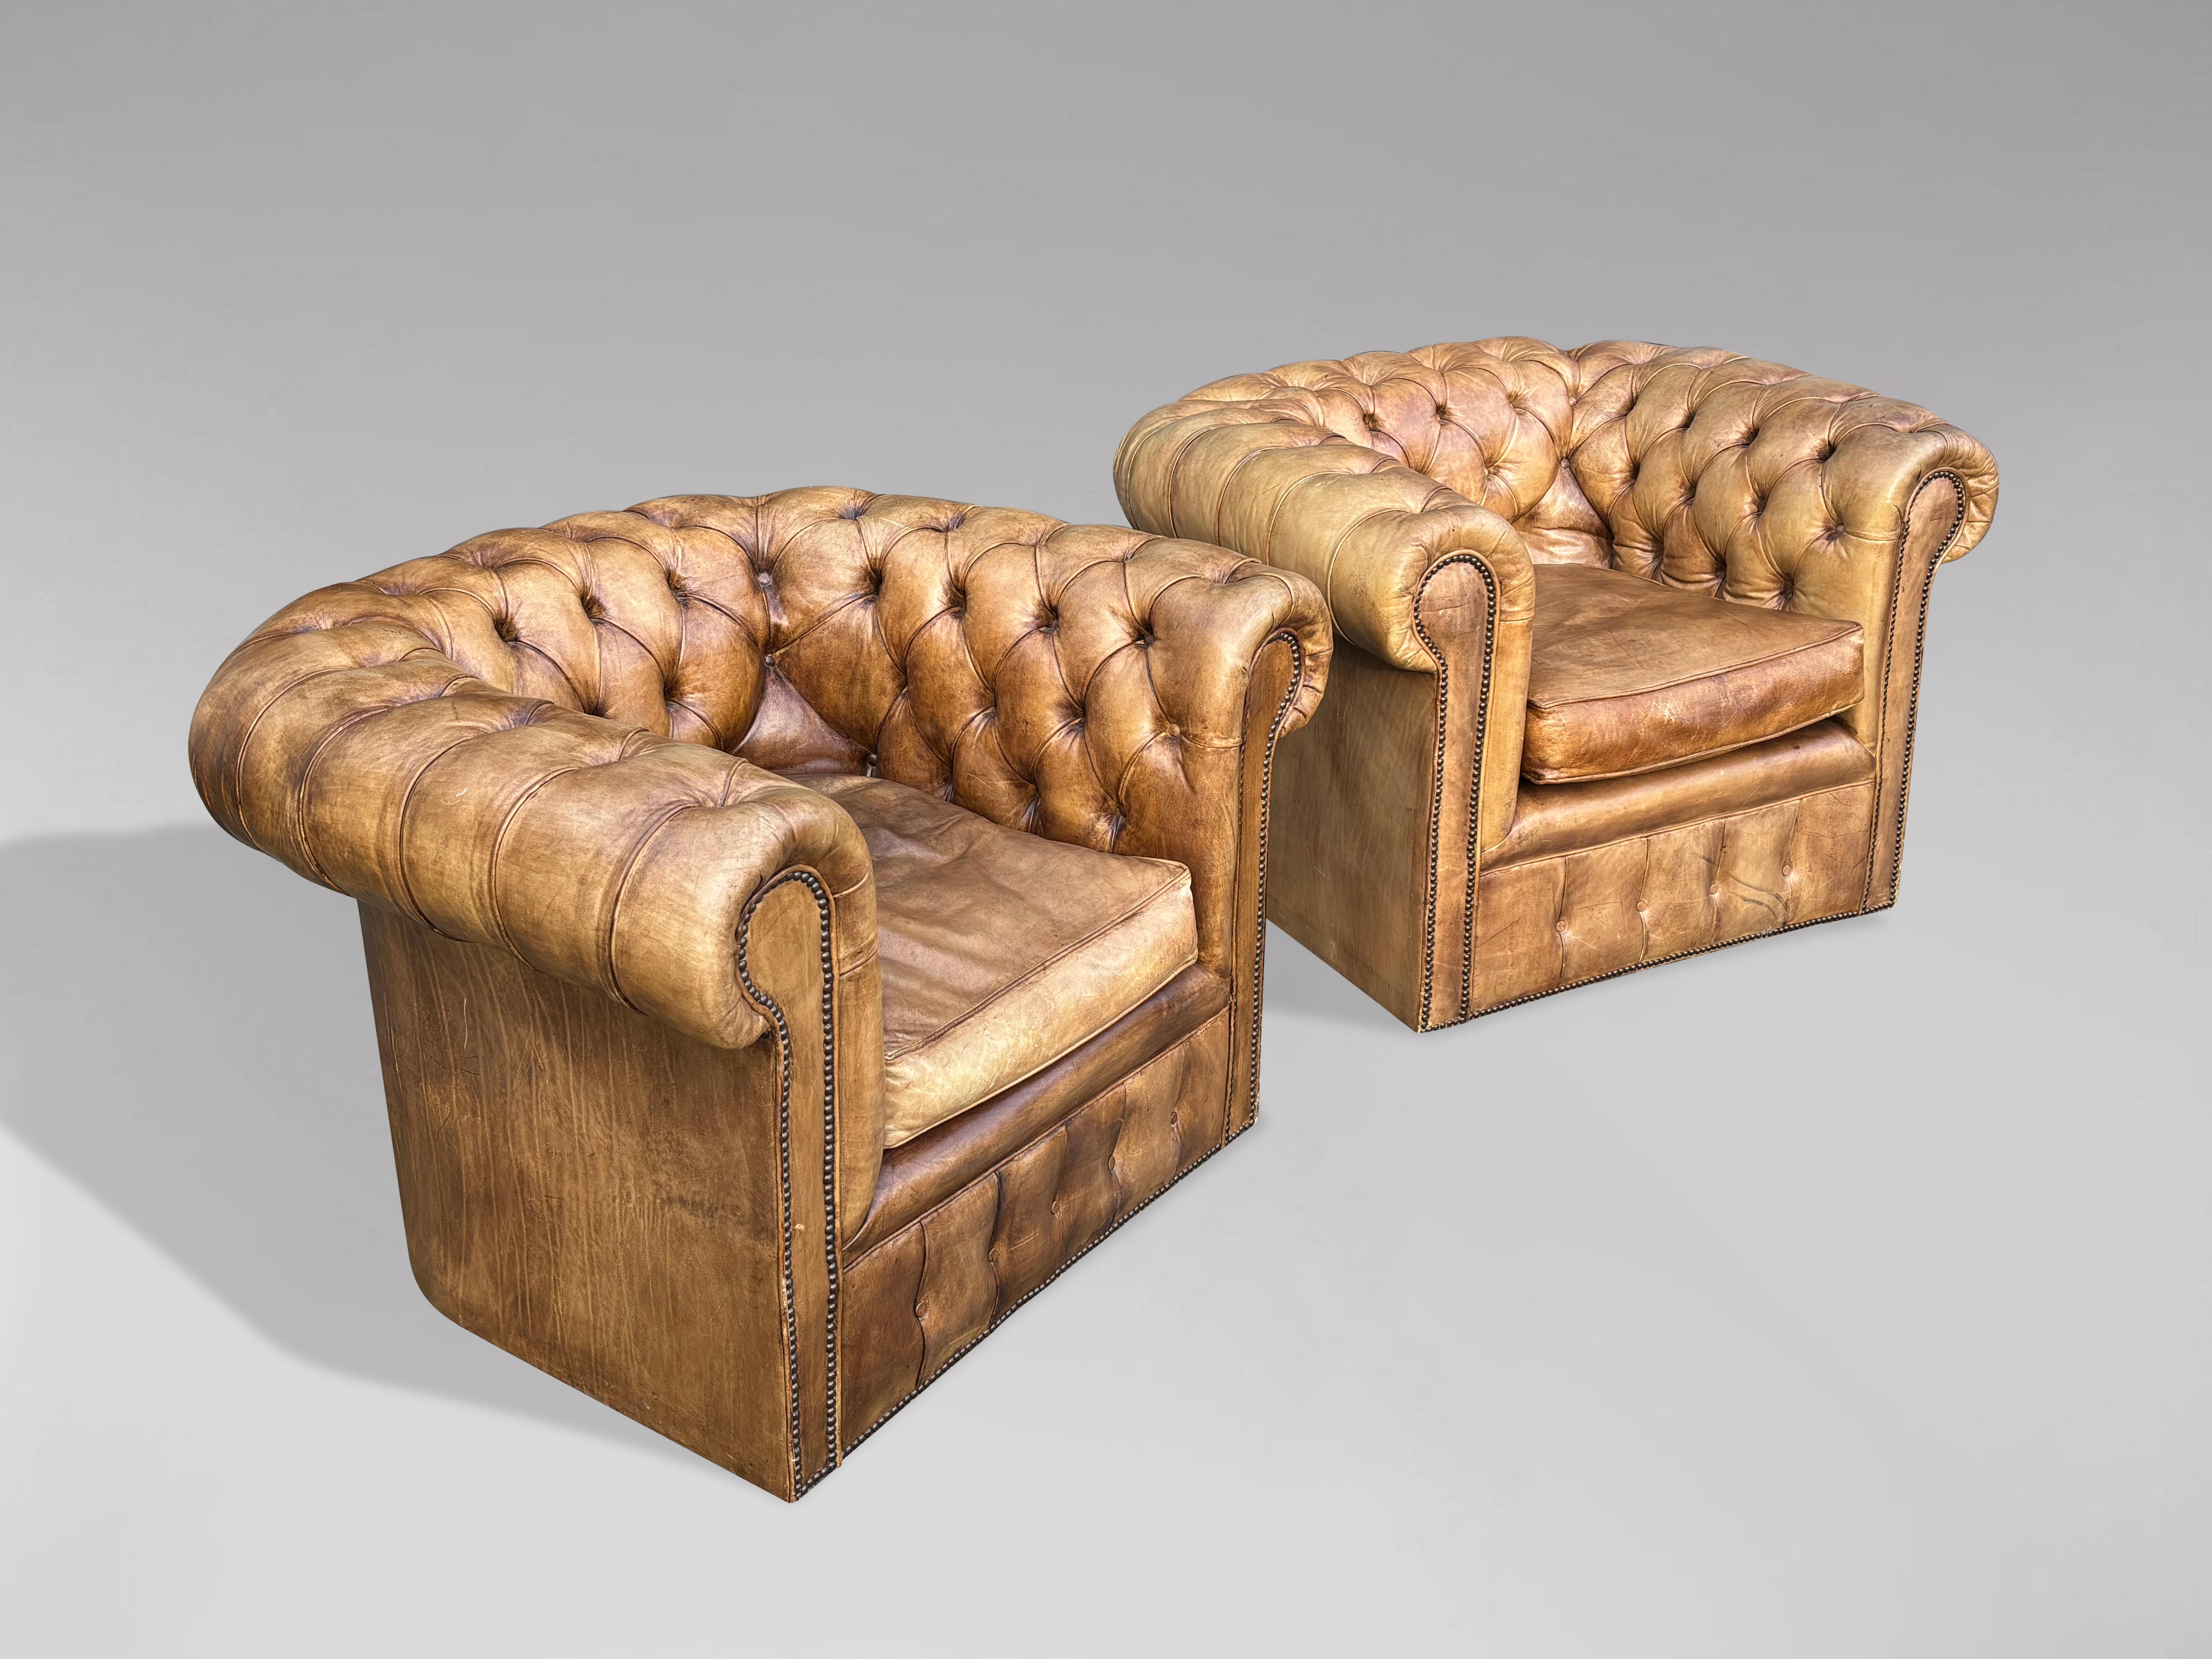 Paire de fauteuils club Chesterfield en cuir beige de bonne qualité, datant de la fin du XIXe siècle et de l'époque victorienne. Peau de cuir beige originale teintée à la main, nettoyée et polie, ce qui donne un toucher doux et somptueux à ce cuir